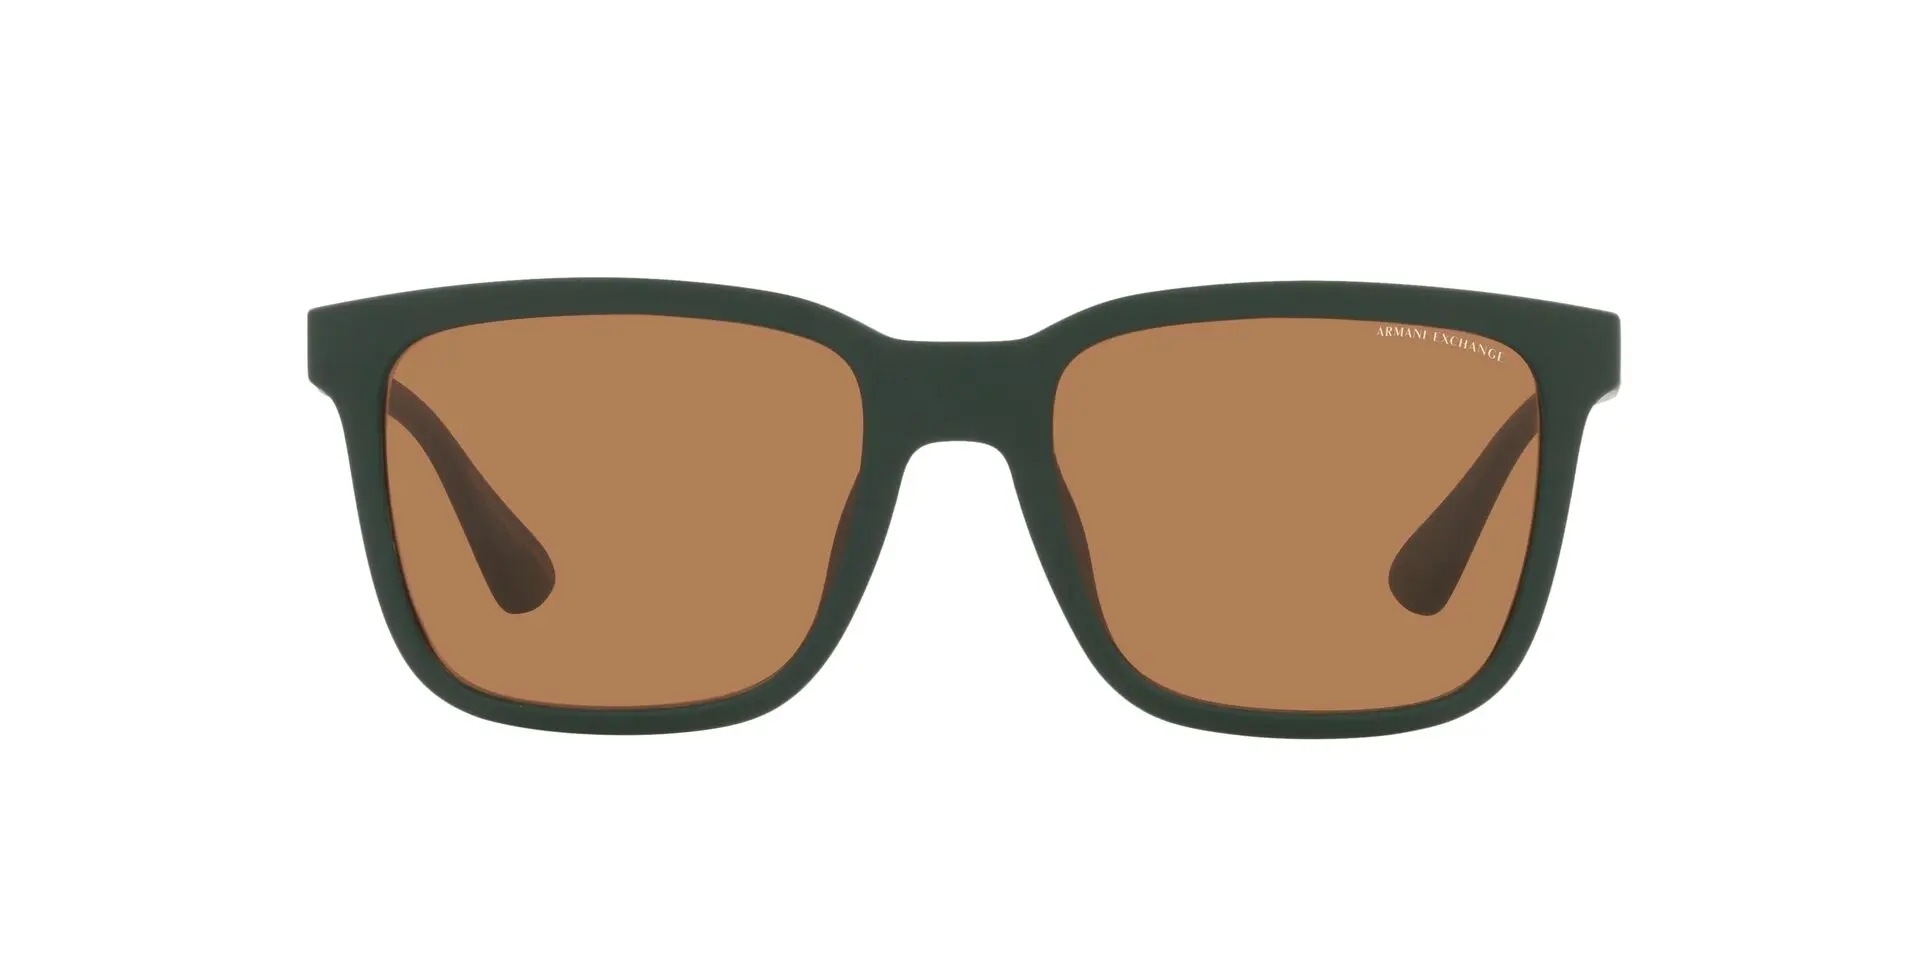 GIORGIO ARMANI occhiali da sole 203 703 RARE VINTAGE 80s sunglasses M.in  Italy | eBay